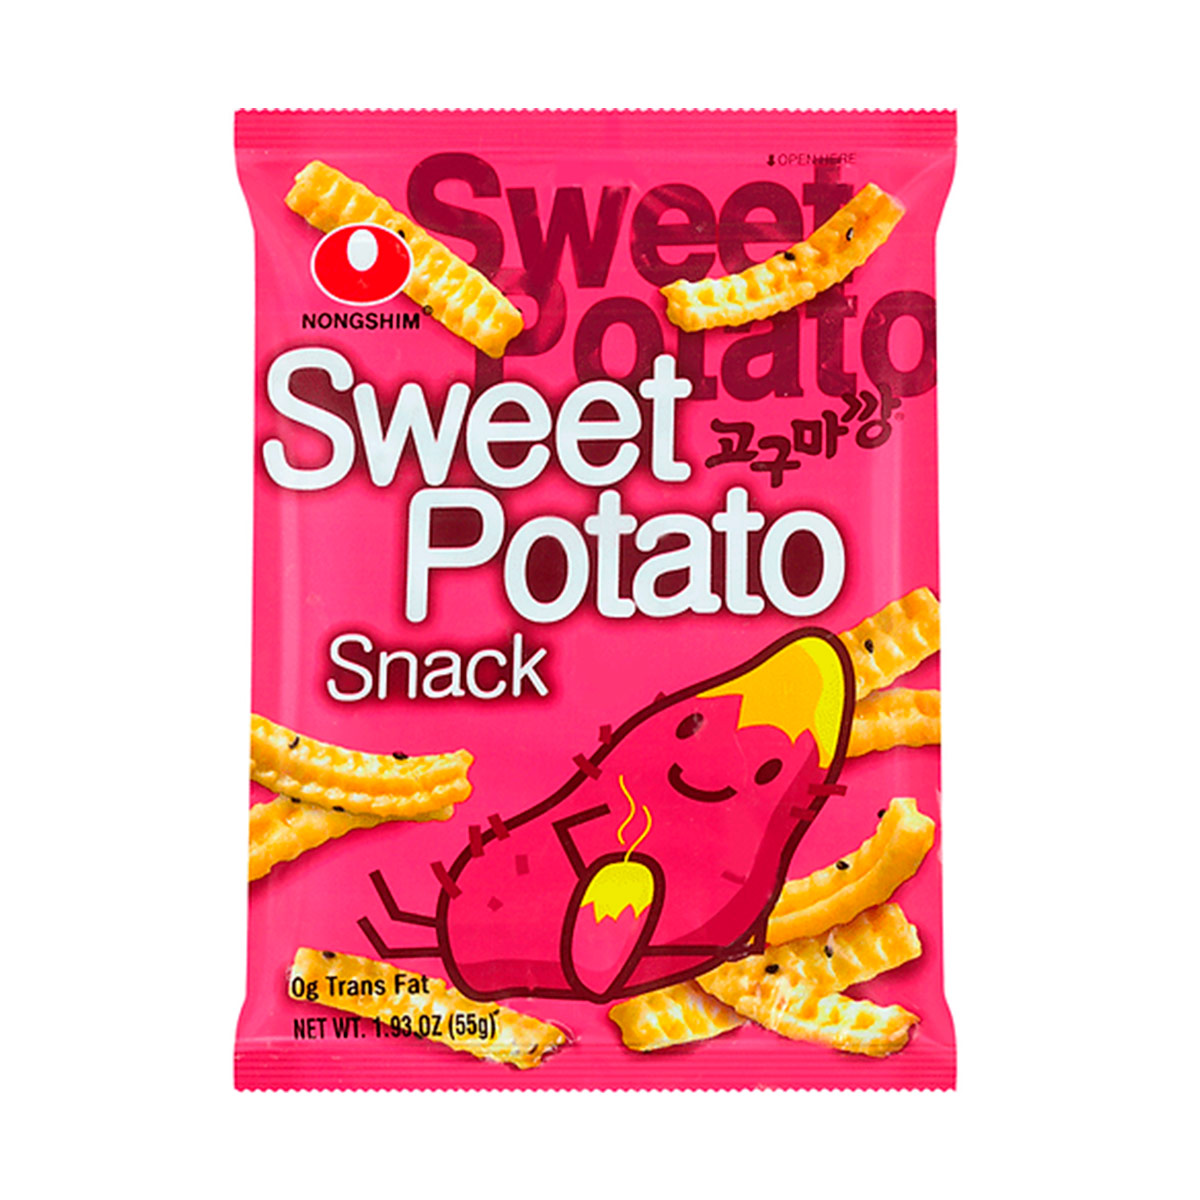 Sweet Potato Snack